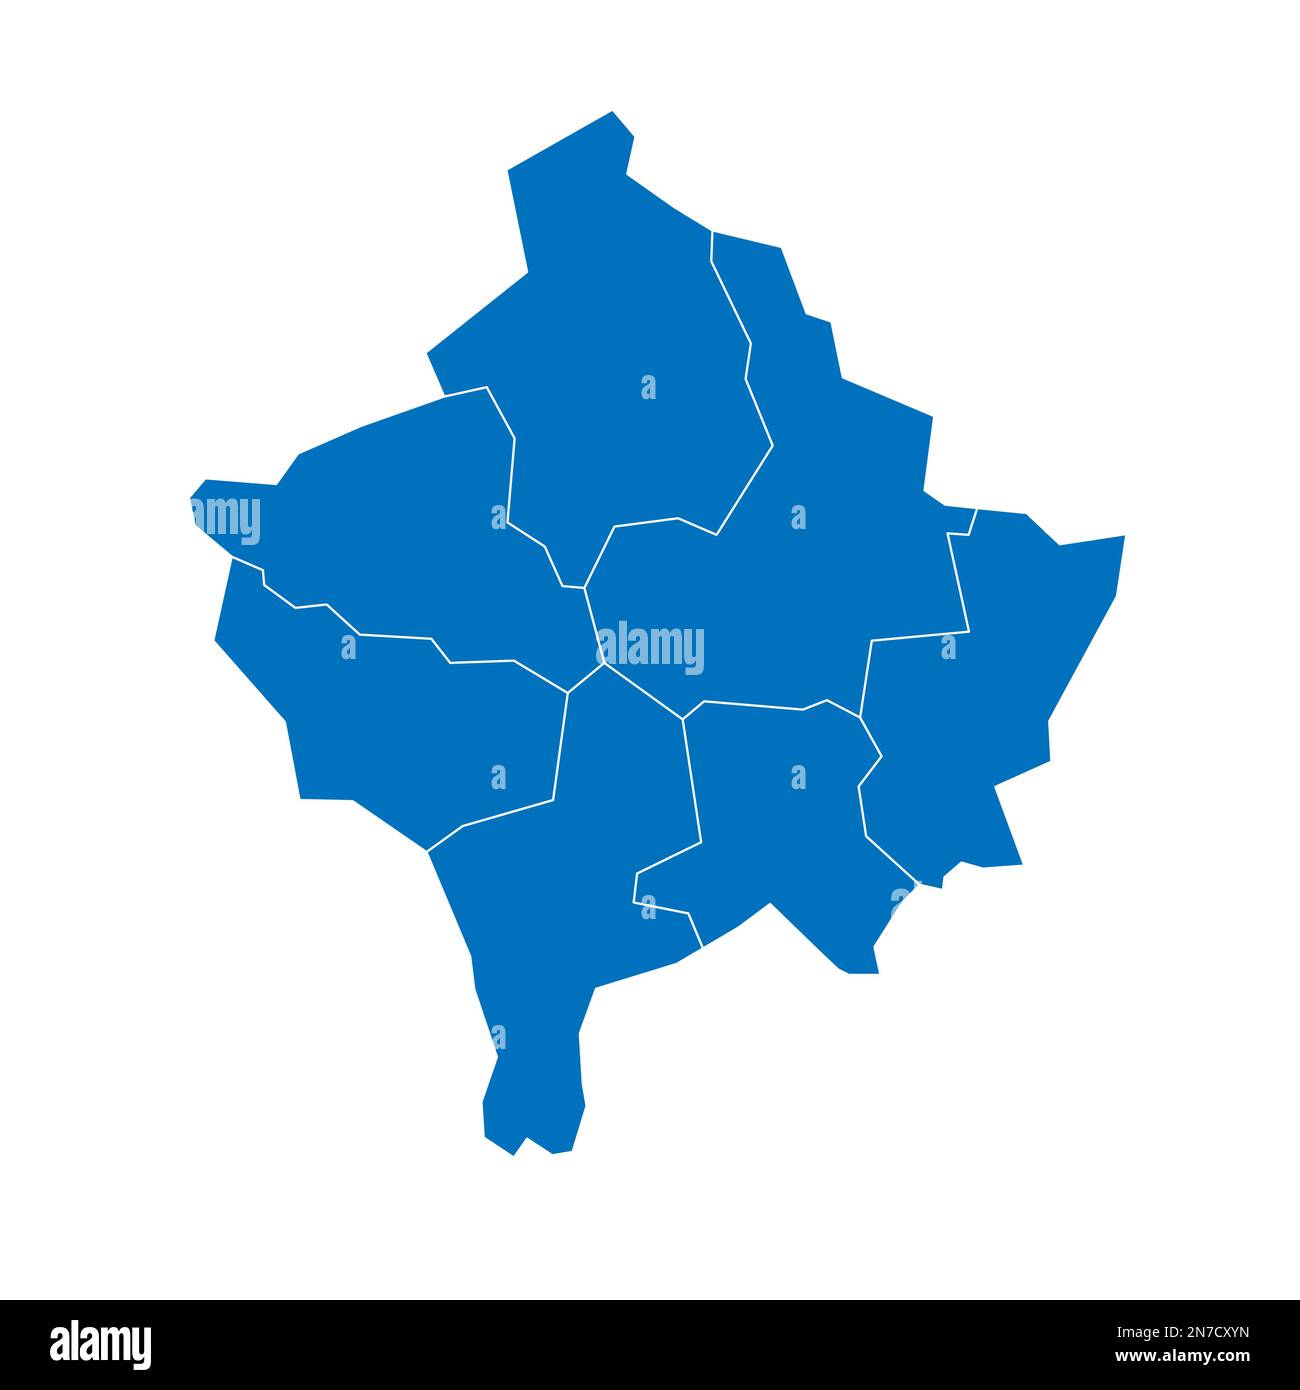 Mappa politica del Kosovo delle divisioni amministrative - distretti. Mappa vettoriale vuota in blu pieno con bordi bianchi. Illustrazione Vettoriale